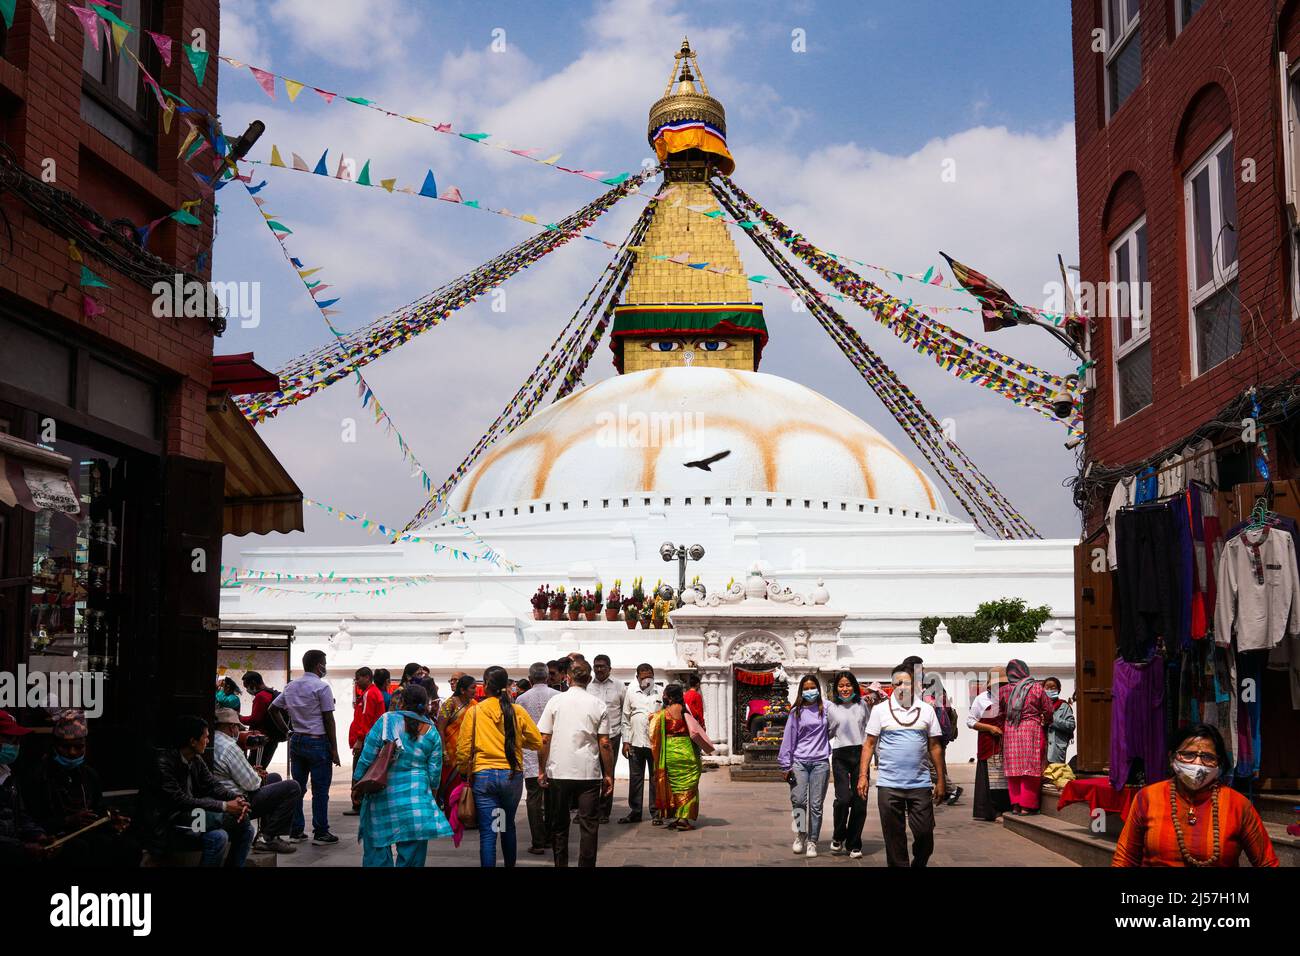 Les drapeaux bouddhistes volent devant le Bodnath Stupa, temple bouddhiste de Katmandou, Népal Banque D'Images